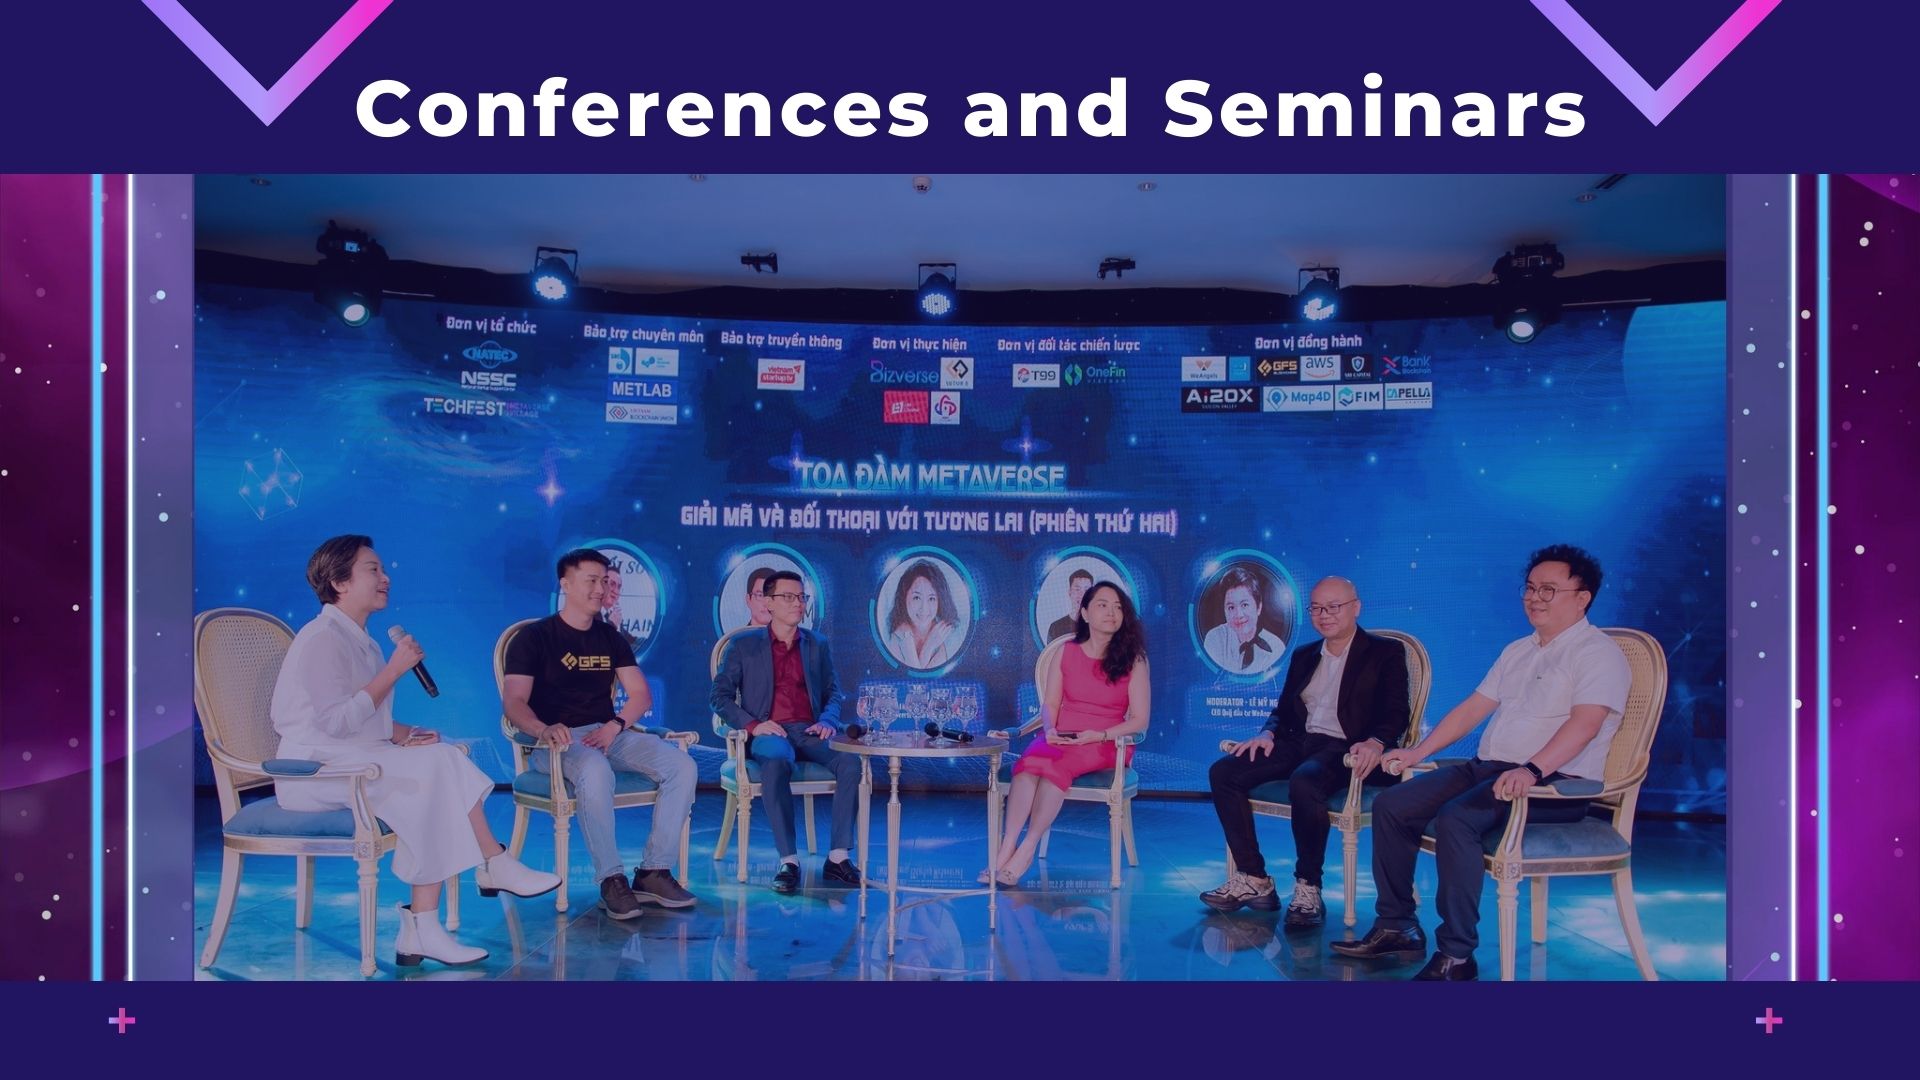 Conferences and Seminars - Hội nghị và Hội thảo